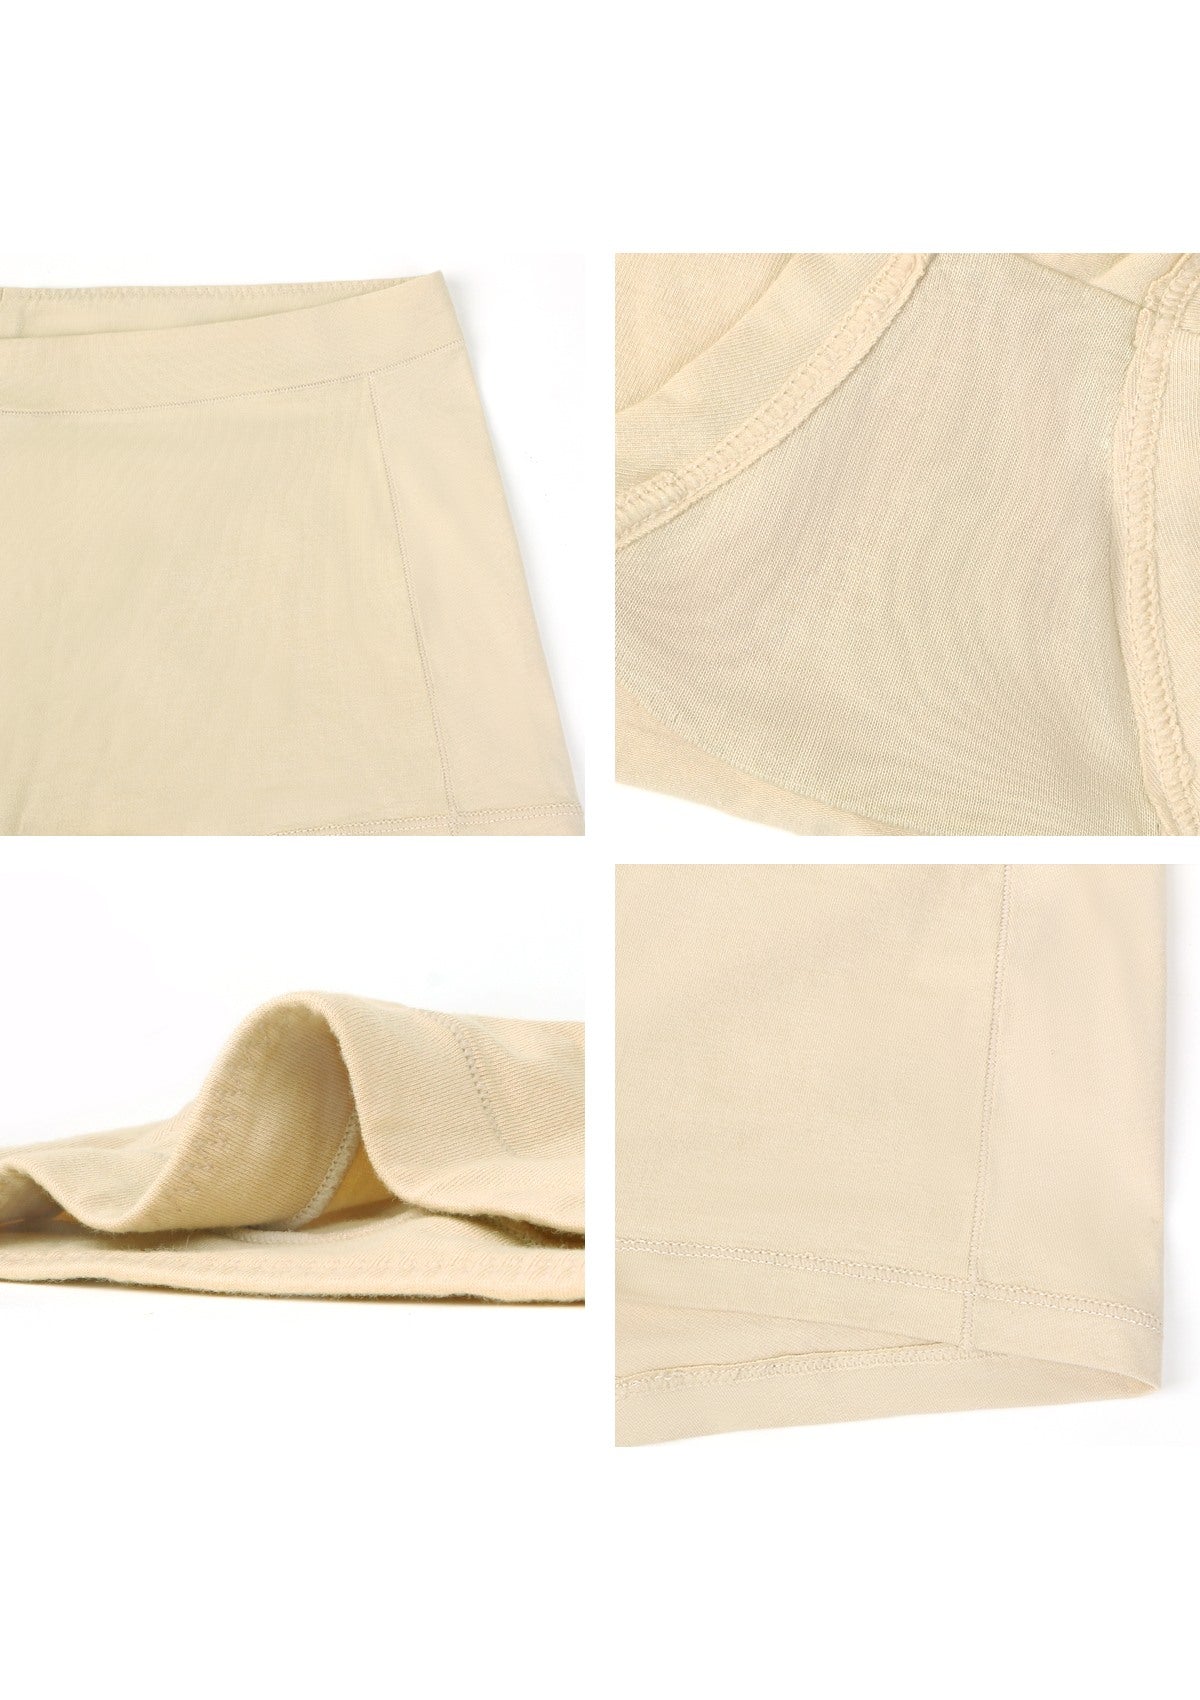 All-Day Comfort Mid-Rise Cotton Boyshorts Underwear 3 Pack - XXL / Black+White+Beige